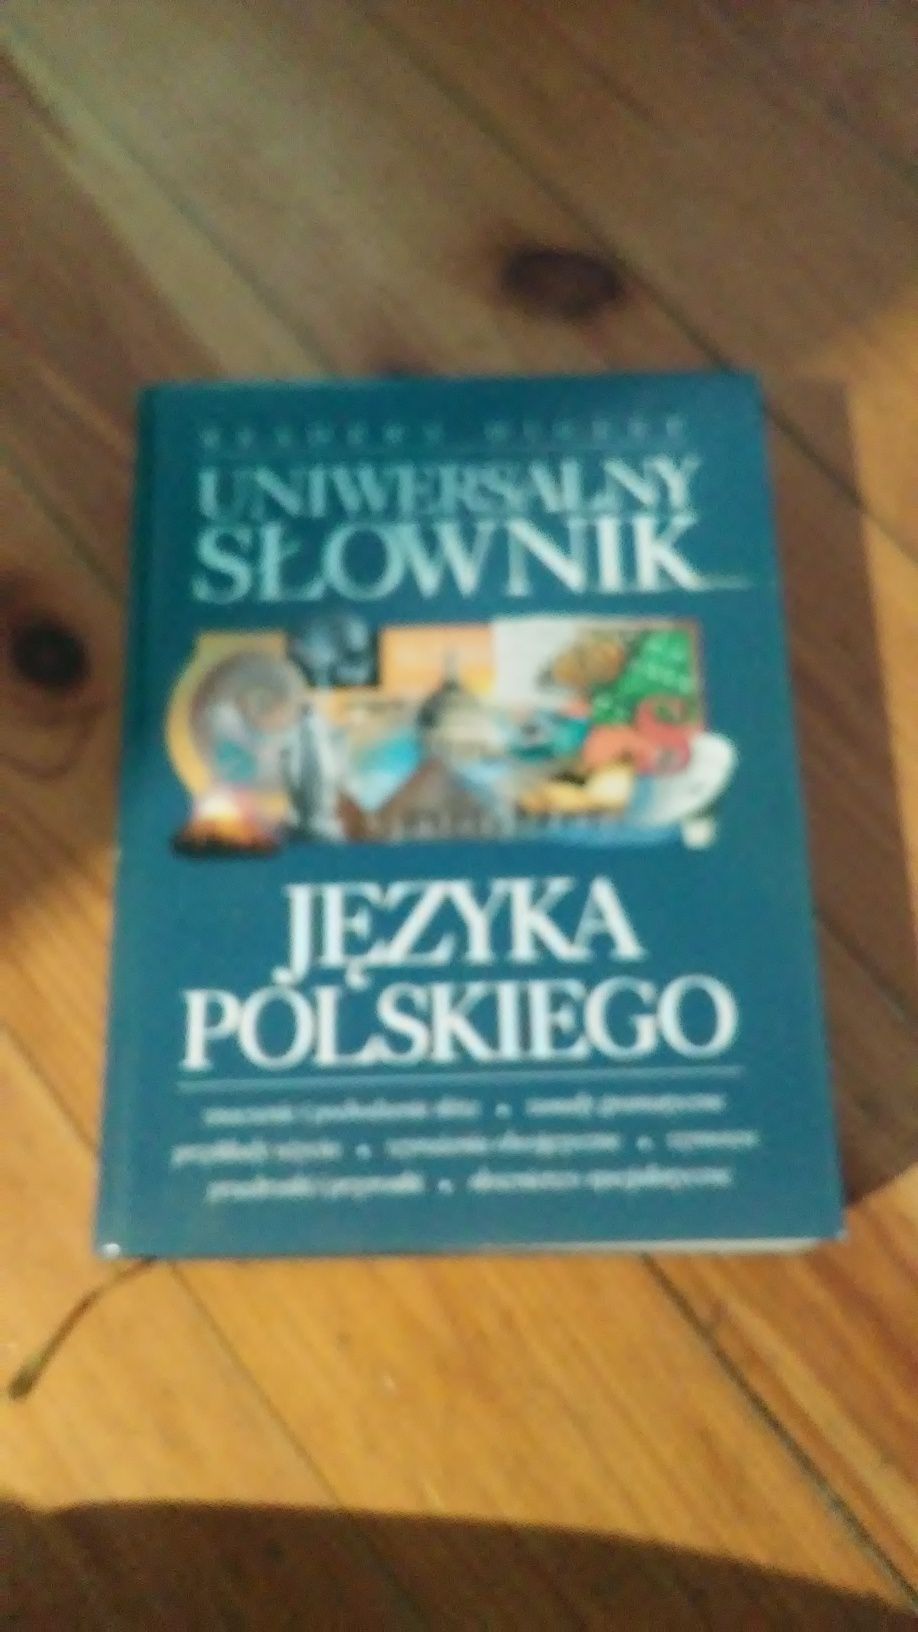 Uniwersalny słownik jezyka polskiego